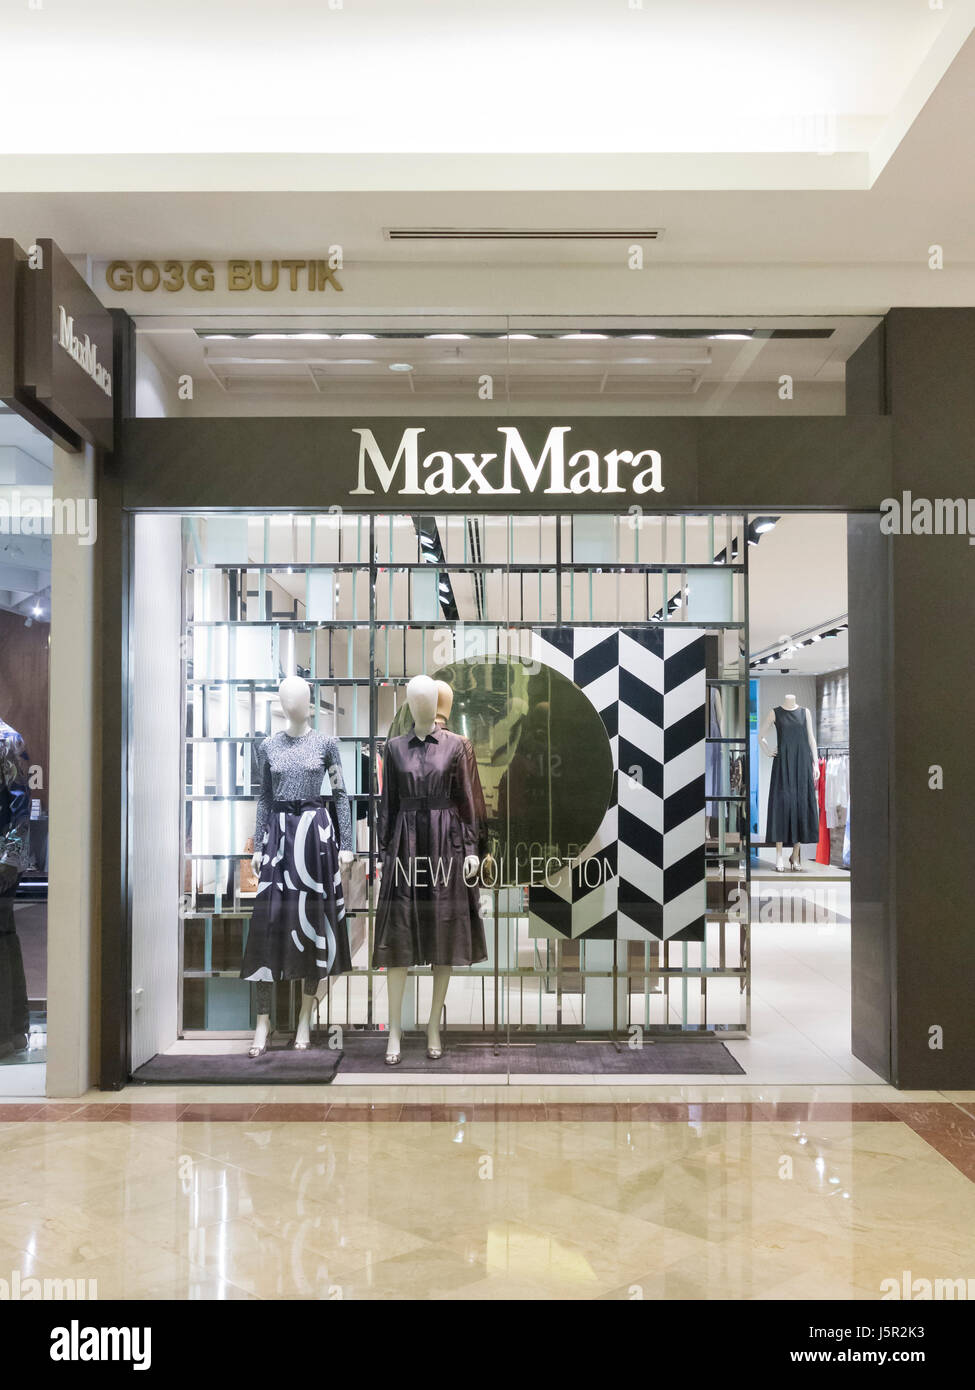 MaxMara shop, Malaysia Stock Photo